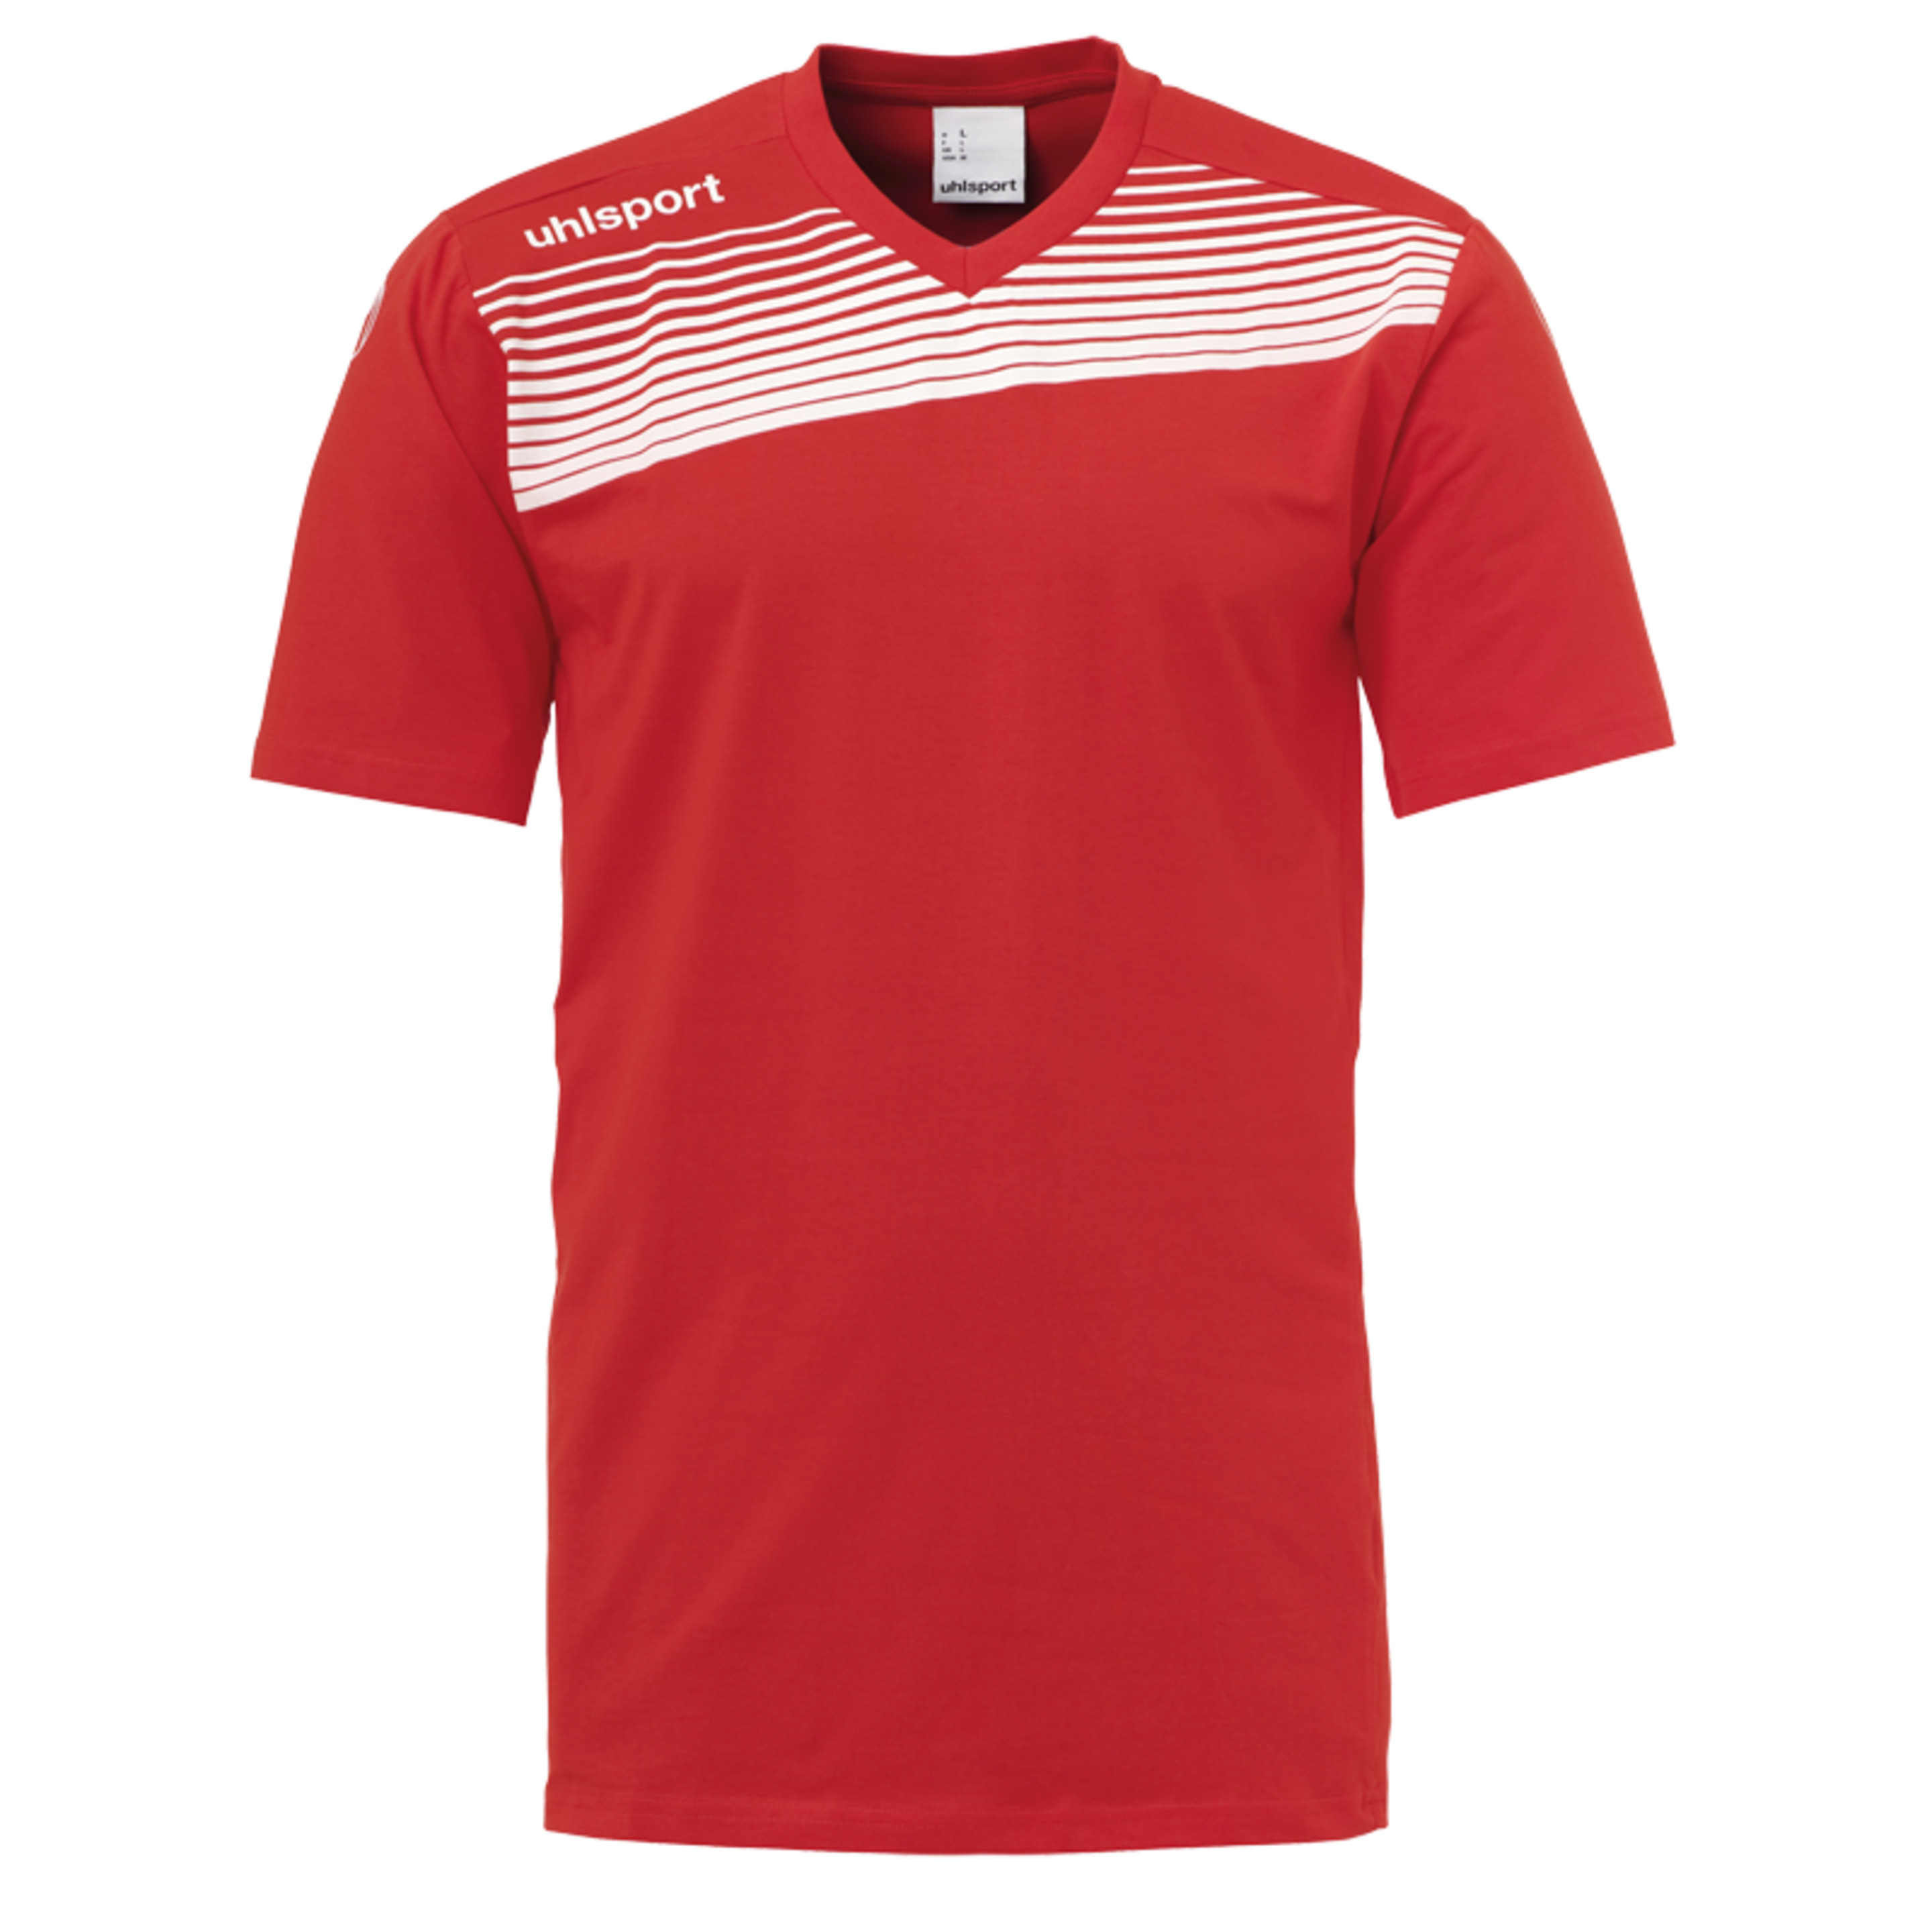 Liga 2.0 Camiseta De Entrenamiento Rojo/blanco Uhlsport - blanco_rojo - Liga 2.0 Camiseta De Entrenamiento Rojo/blanco Uhlsport  MKP